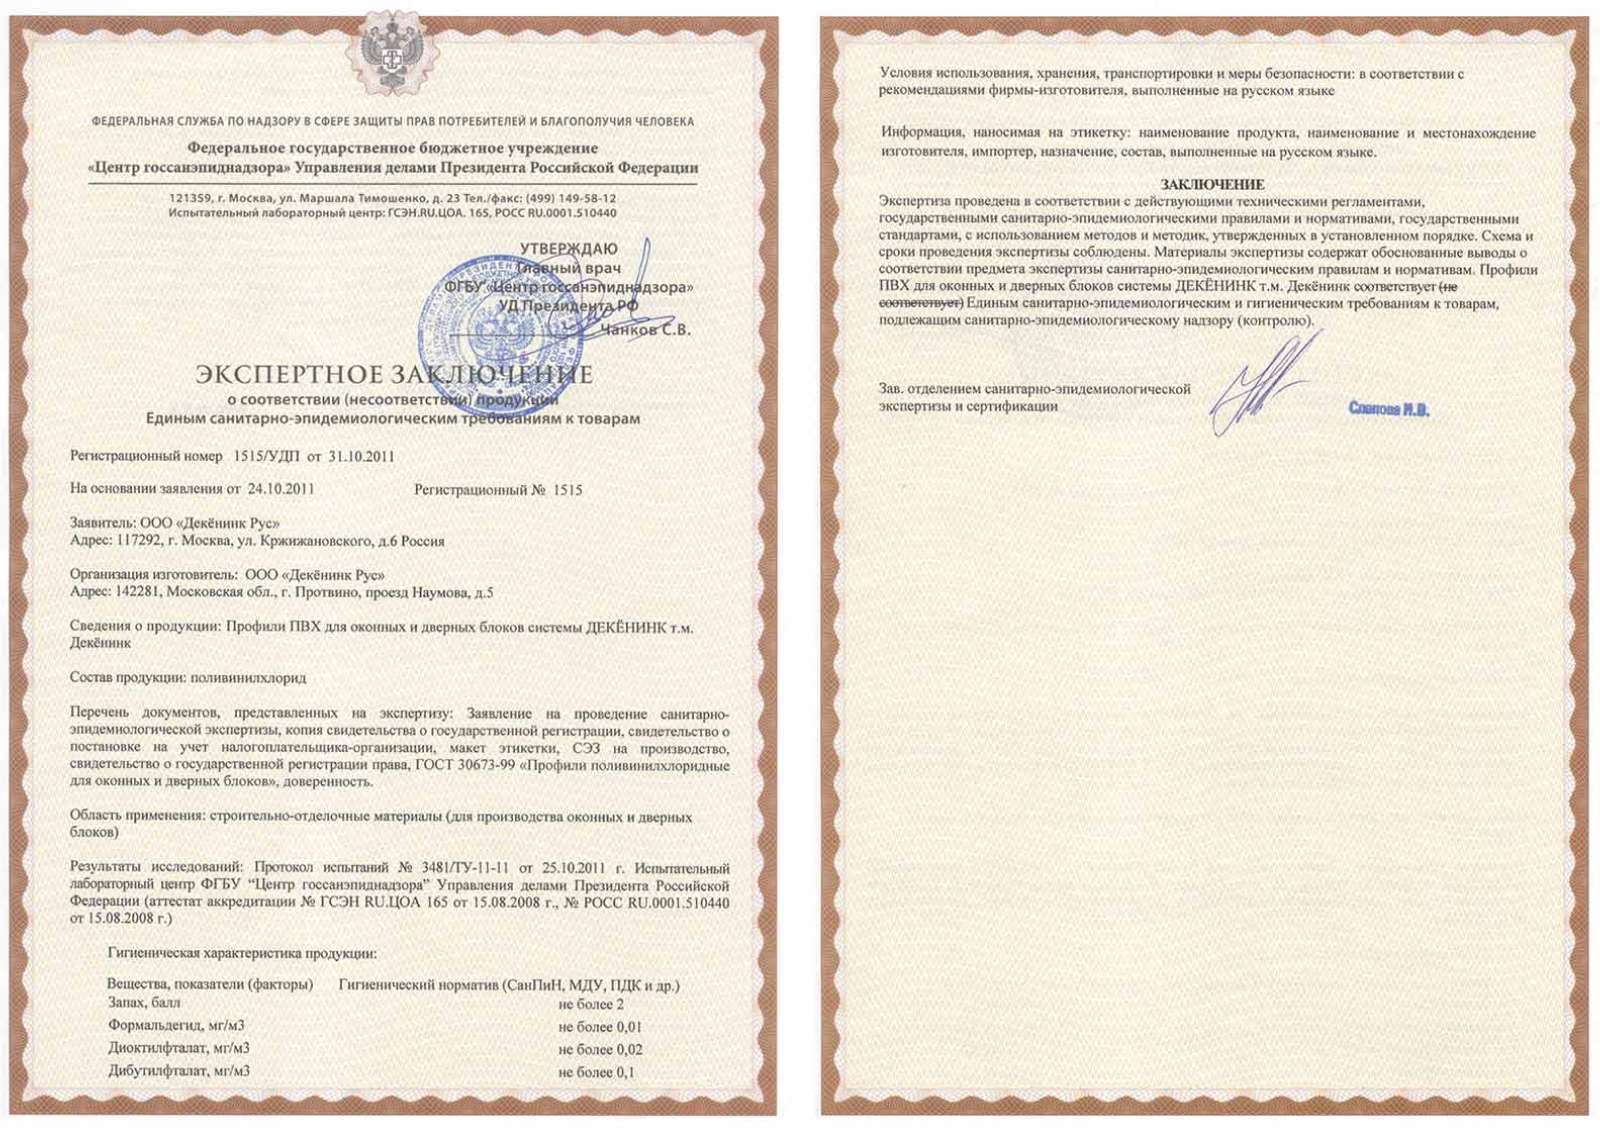 Сертификат соответствия профиля санэпидем требованиям 1515/УДП от 24.10.11